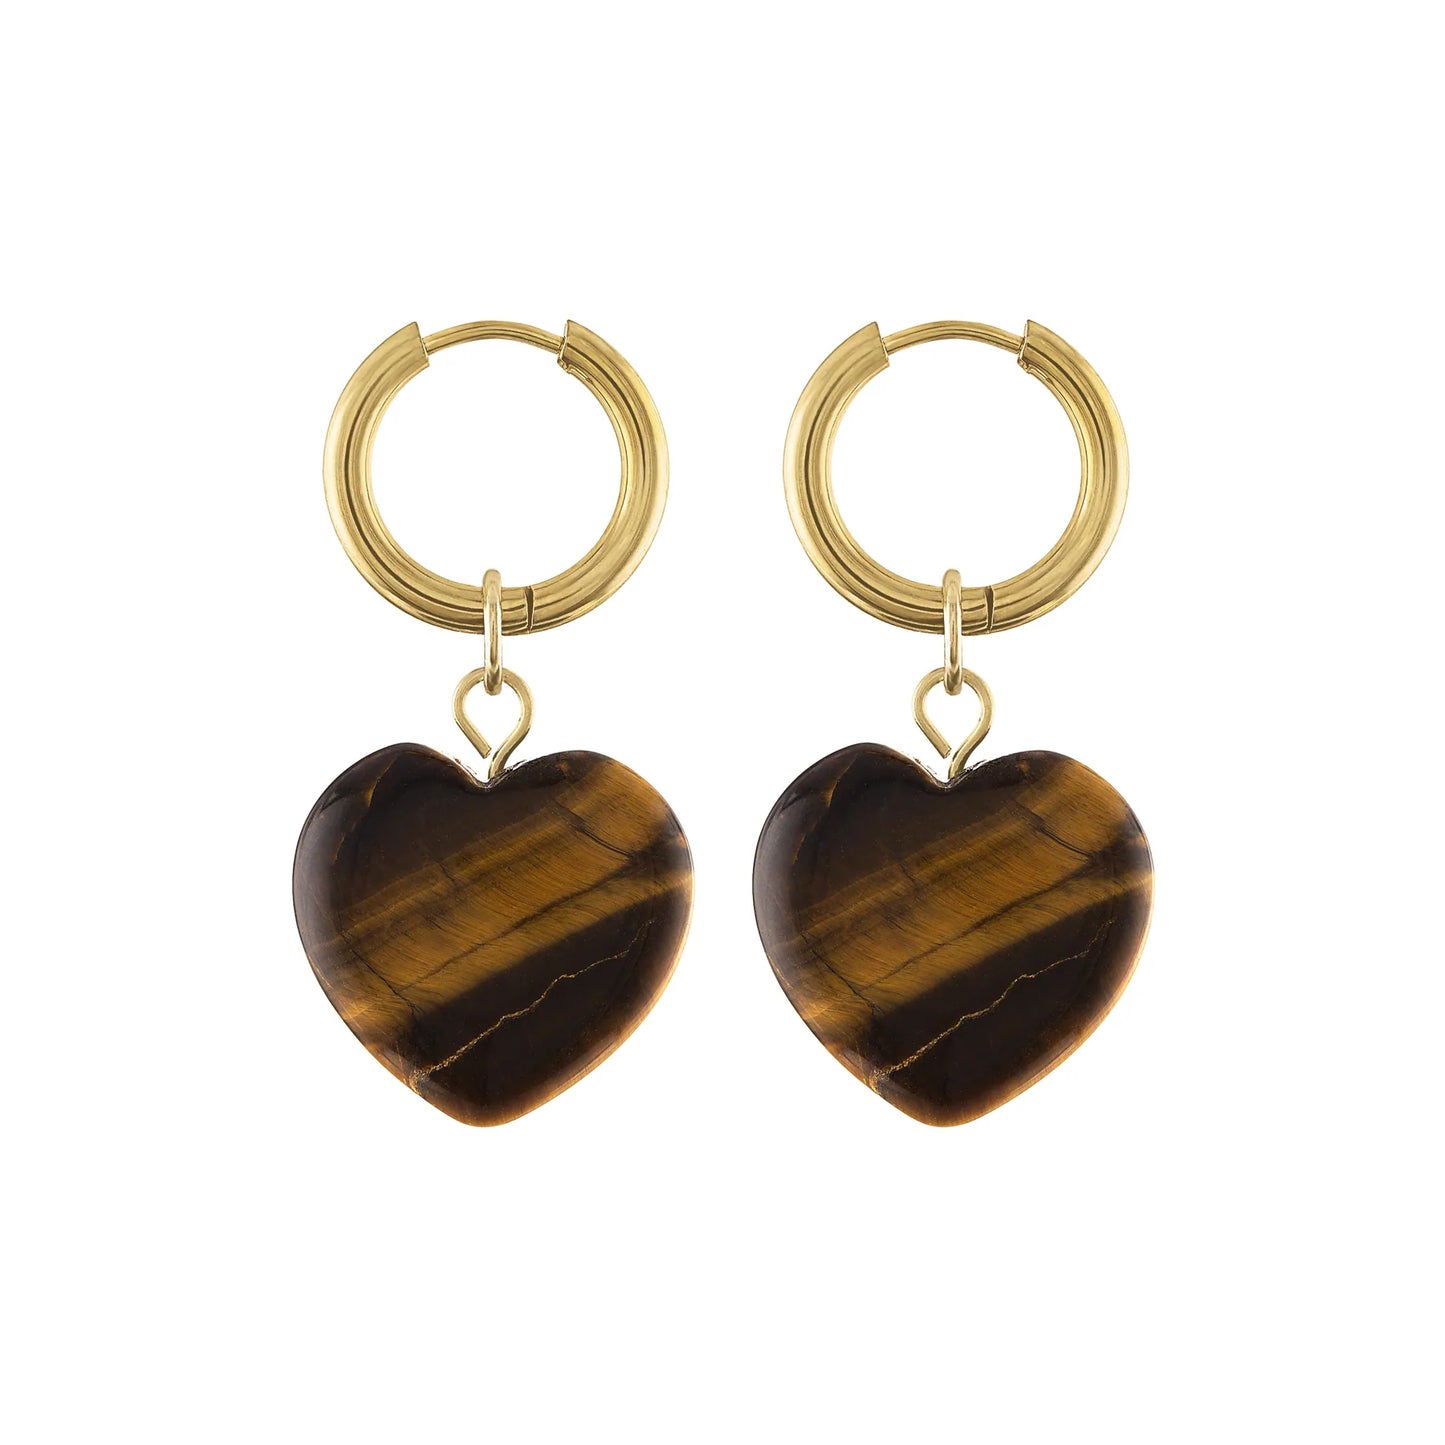 Olivia Le | Adele Stone Heart Hoop Earrings